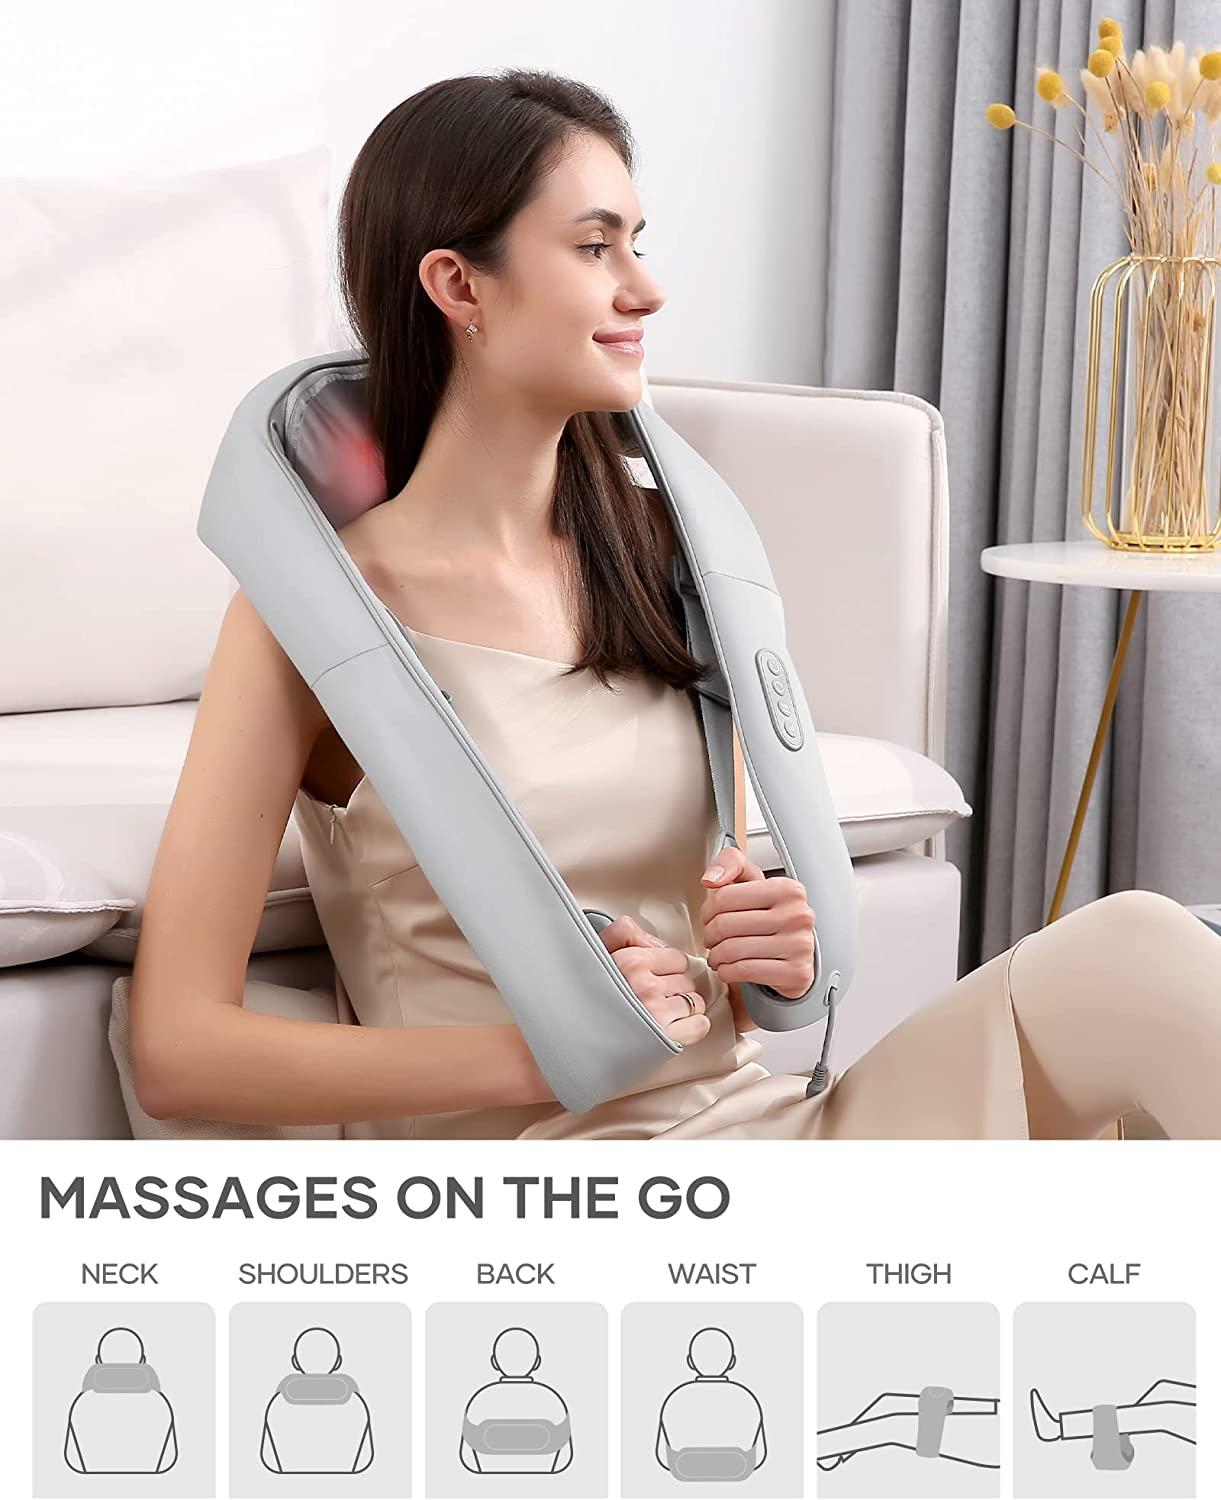 Naipo oCuddle Back and Neck Massager Adjustable Heat Straps Shoulder Massage